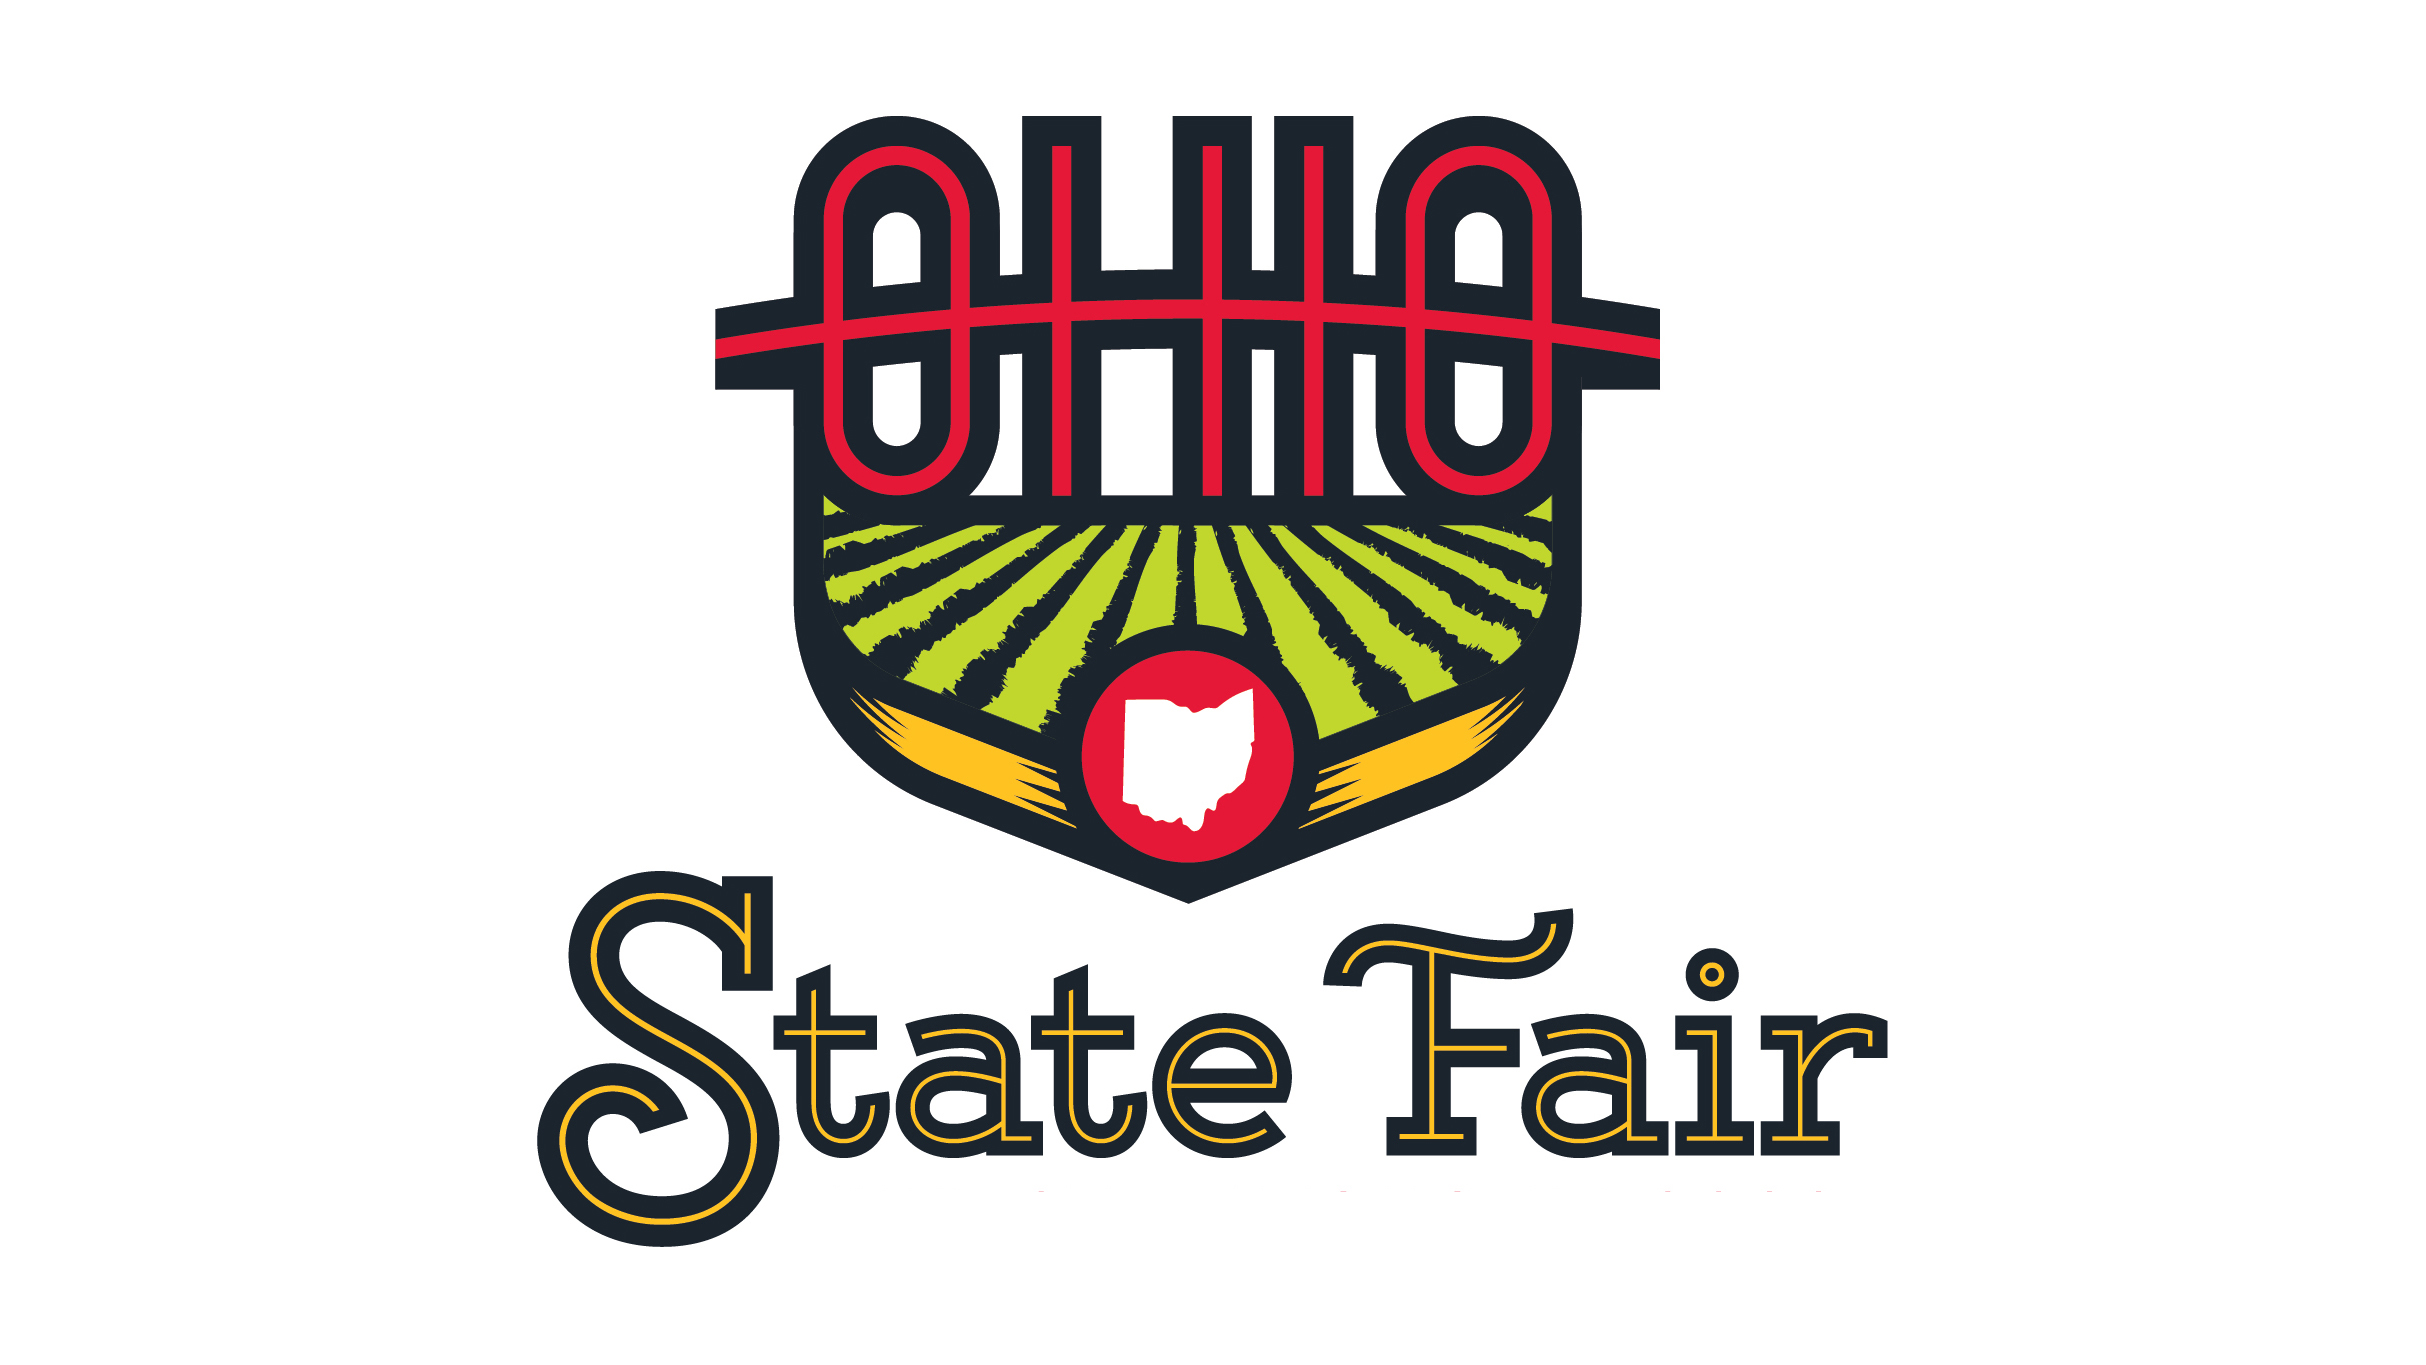 Ohio State Fair Admission